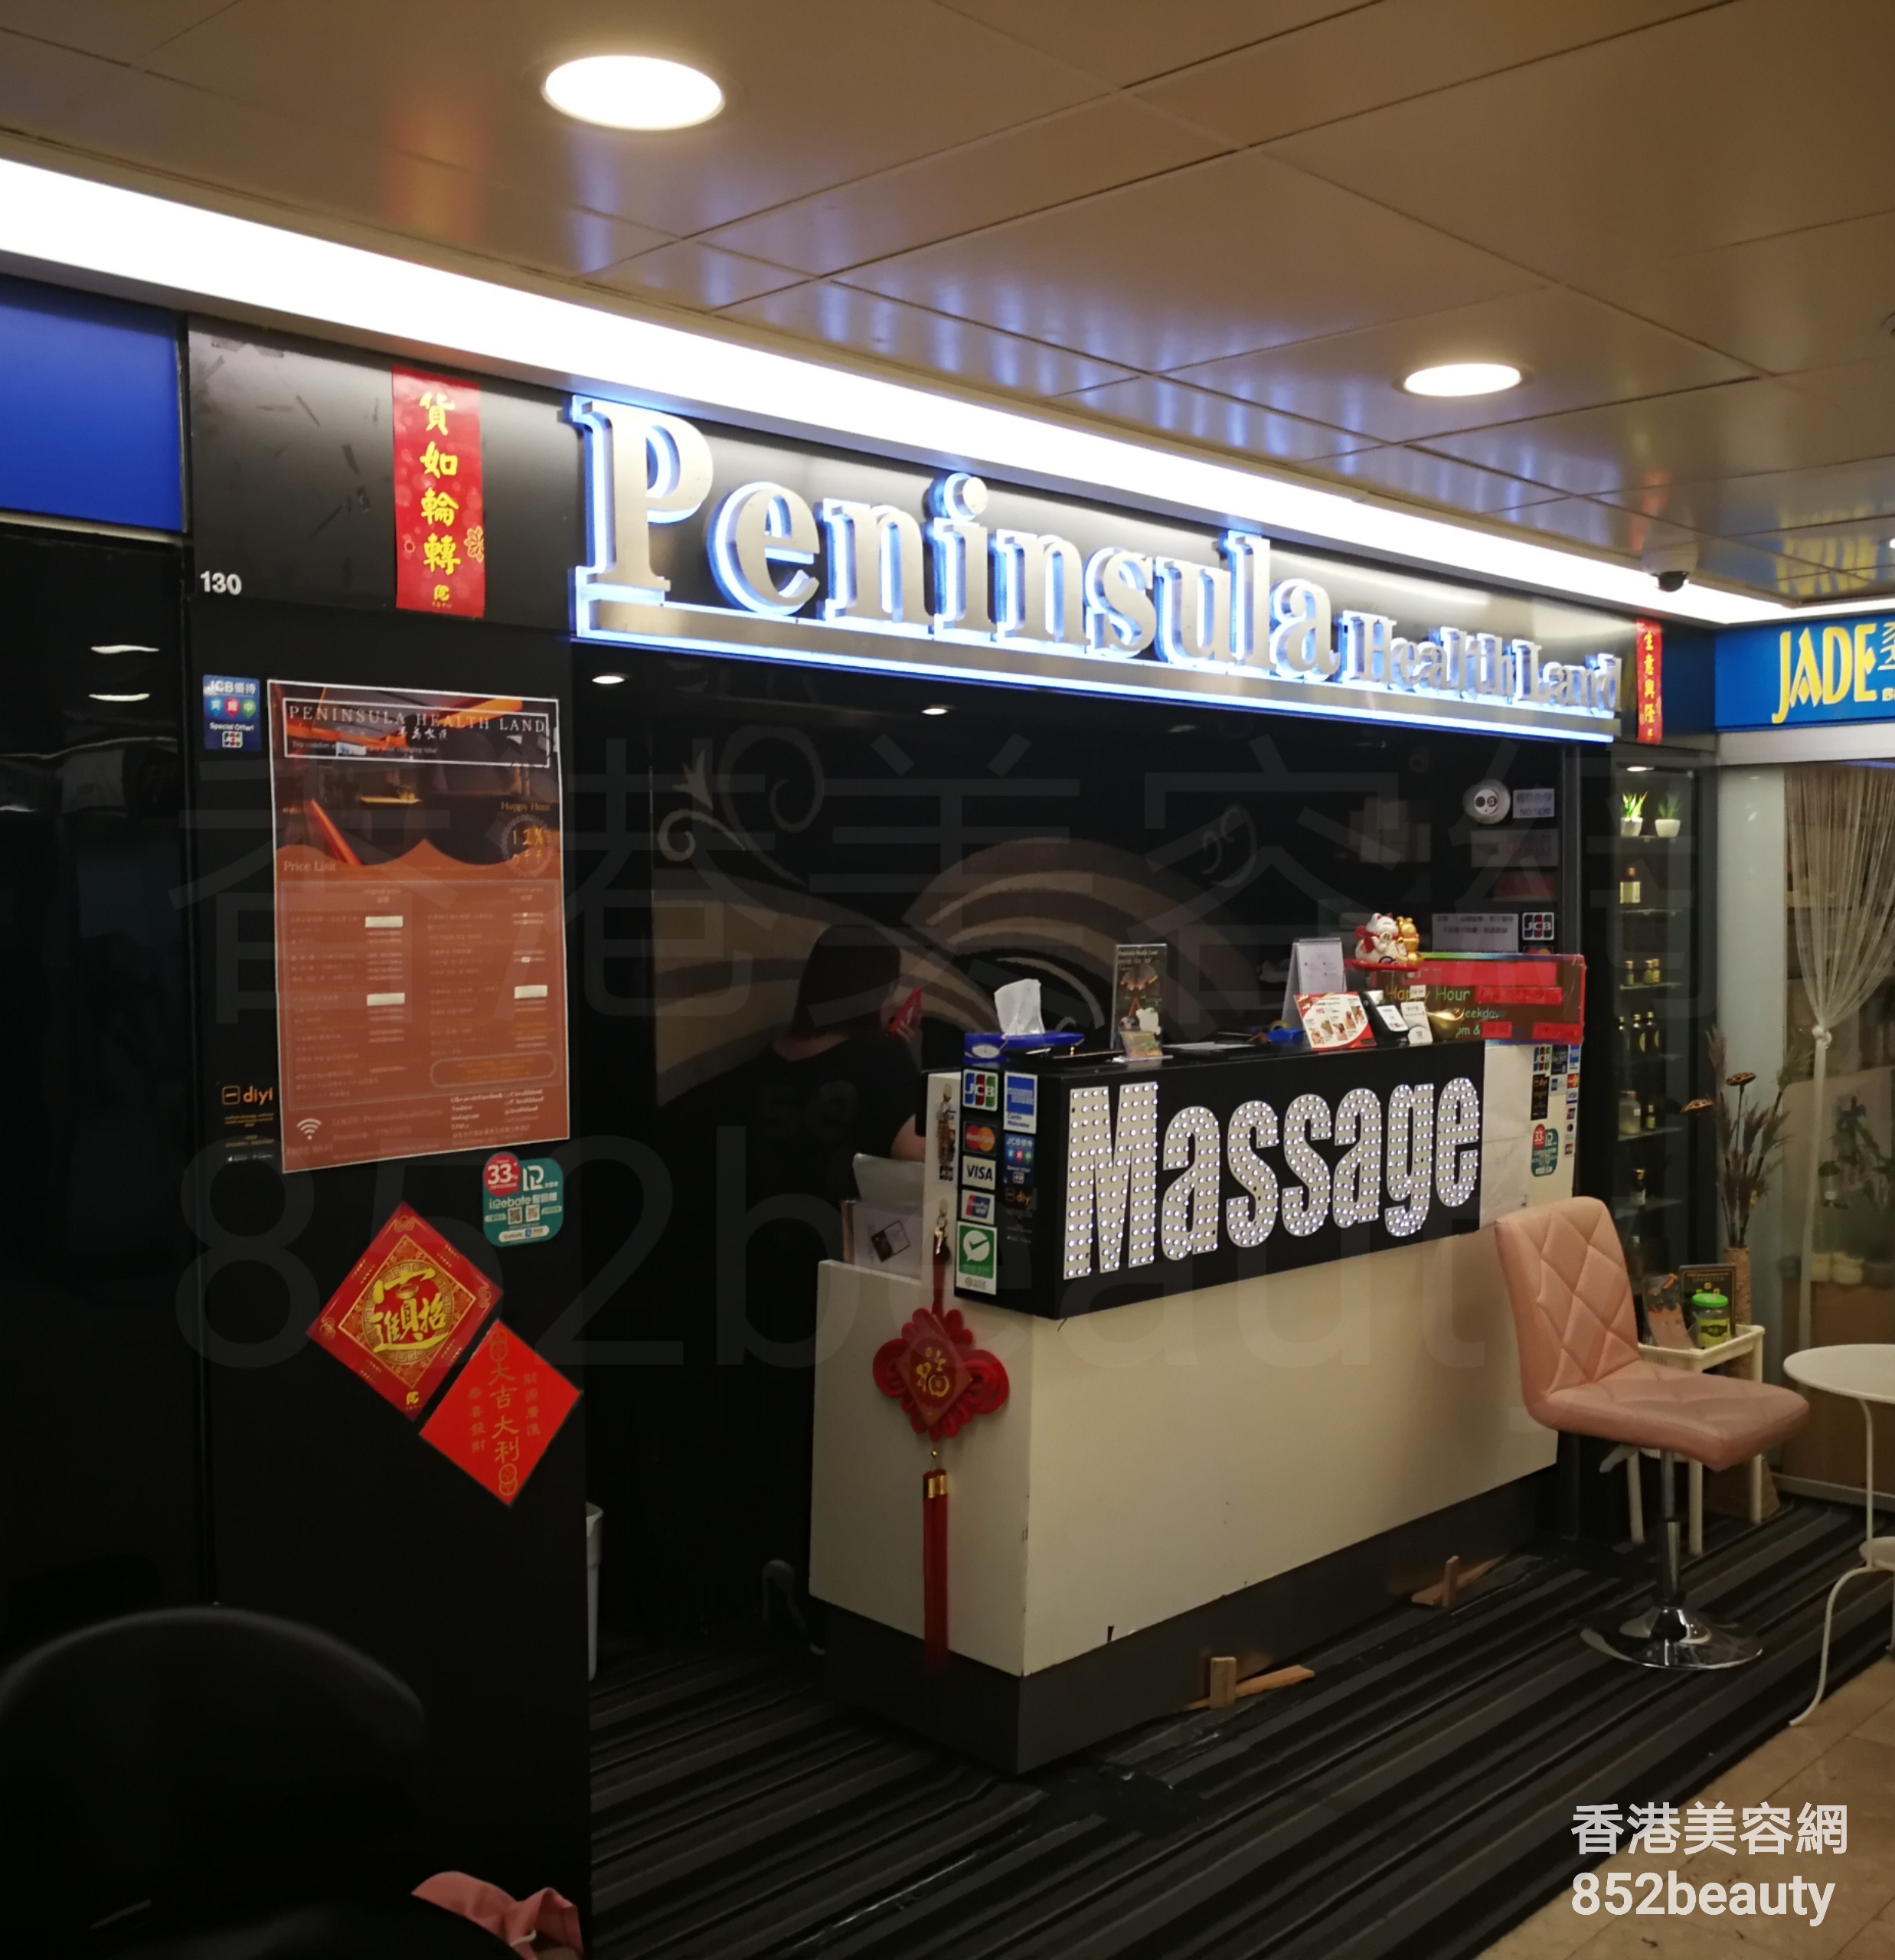 香港美容網 Hong Kong Beauty Salon 美容院 / 美容師: 半島水匯 Peninsula Health Land